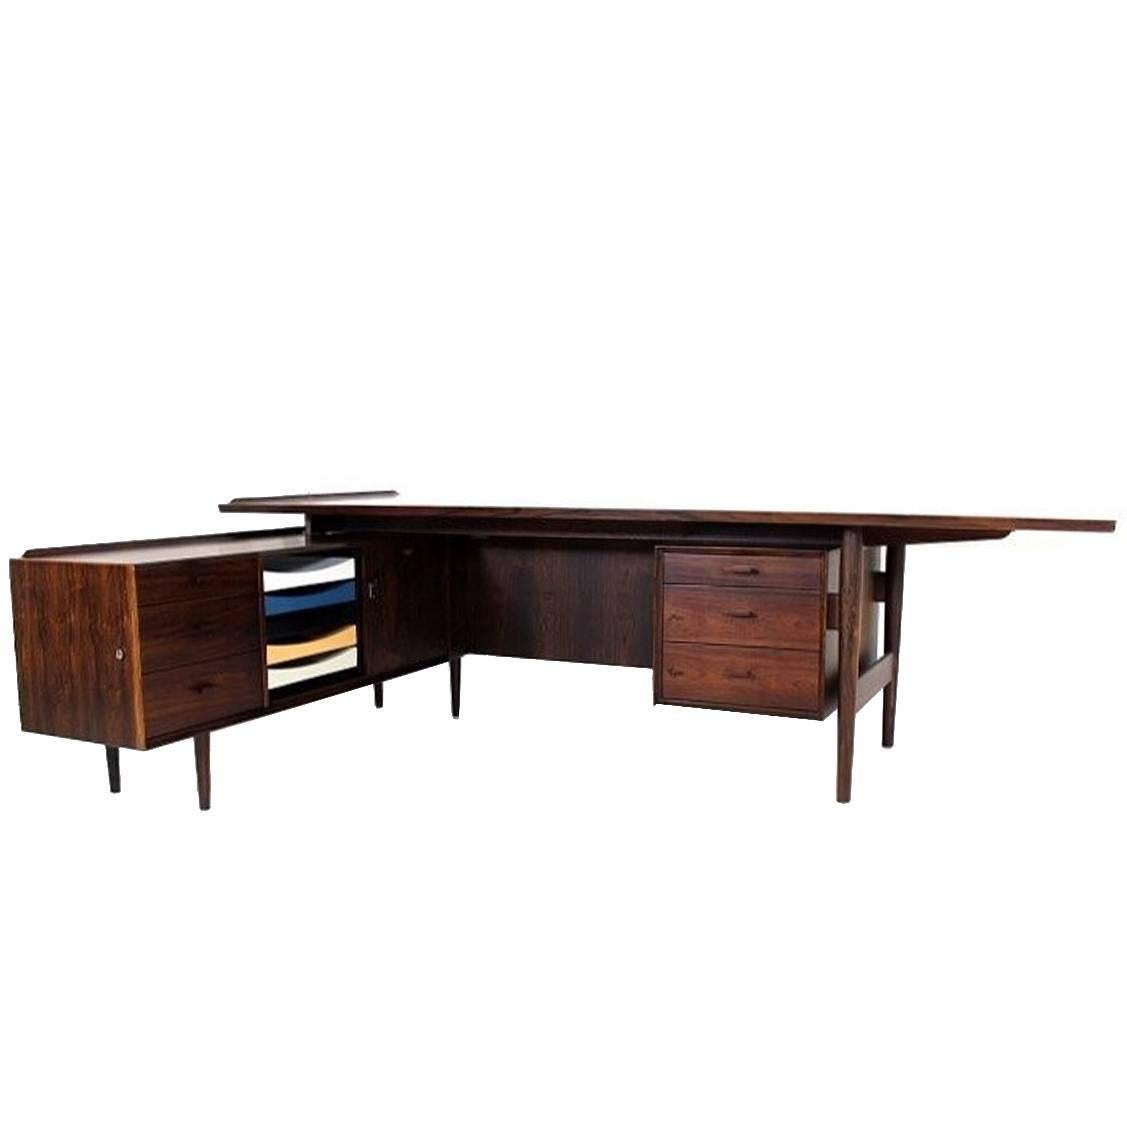 Big Executive L-Shaped Desk by Arne Vodder for Sibast Furniture, Denmark, 1960s